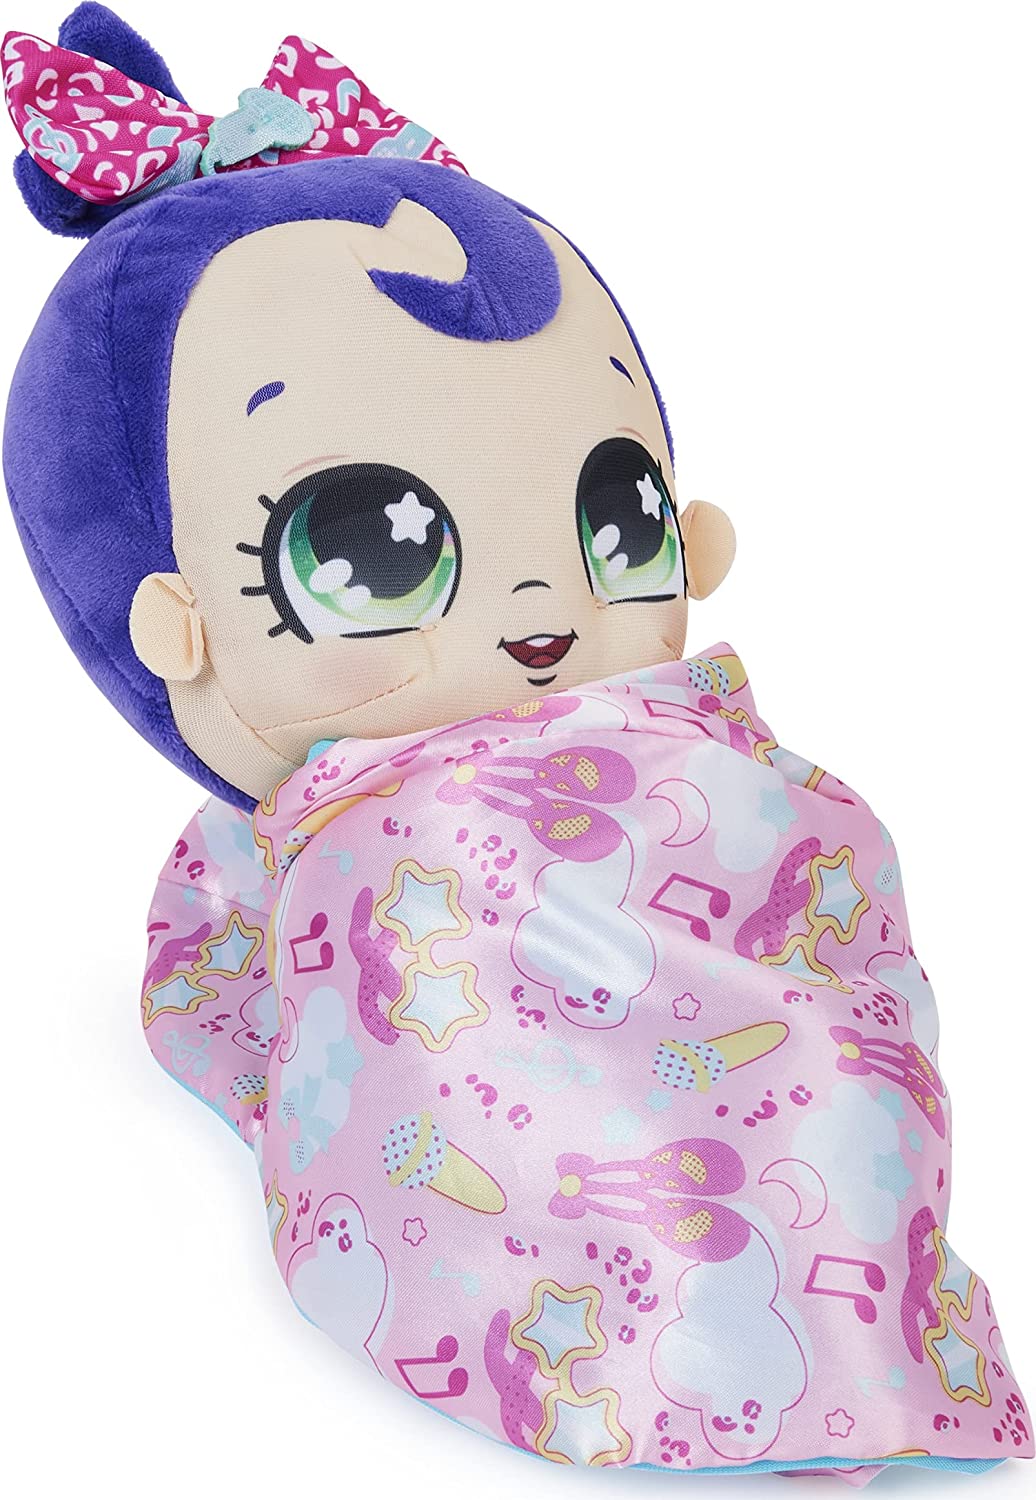 Magic Blanket Babies Surprise Baby Doll in peluche con oltre 80 suoni e reazioni,